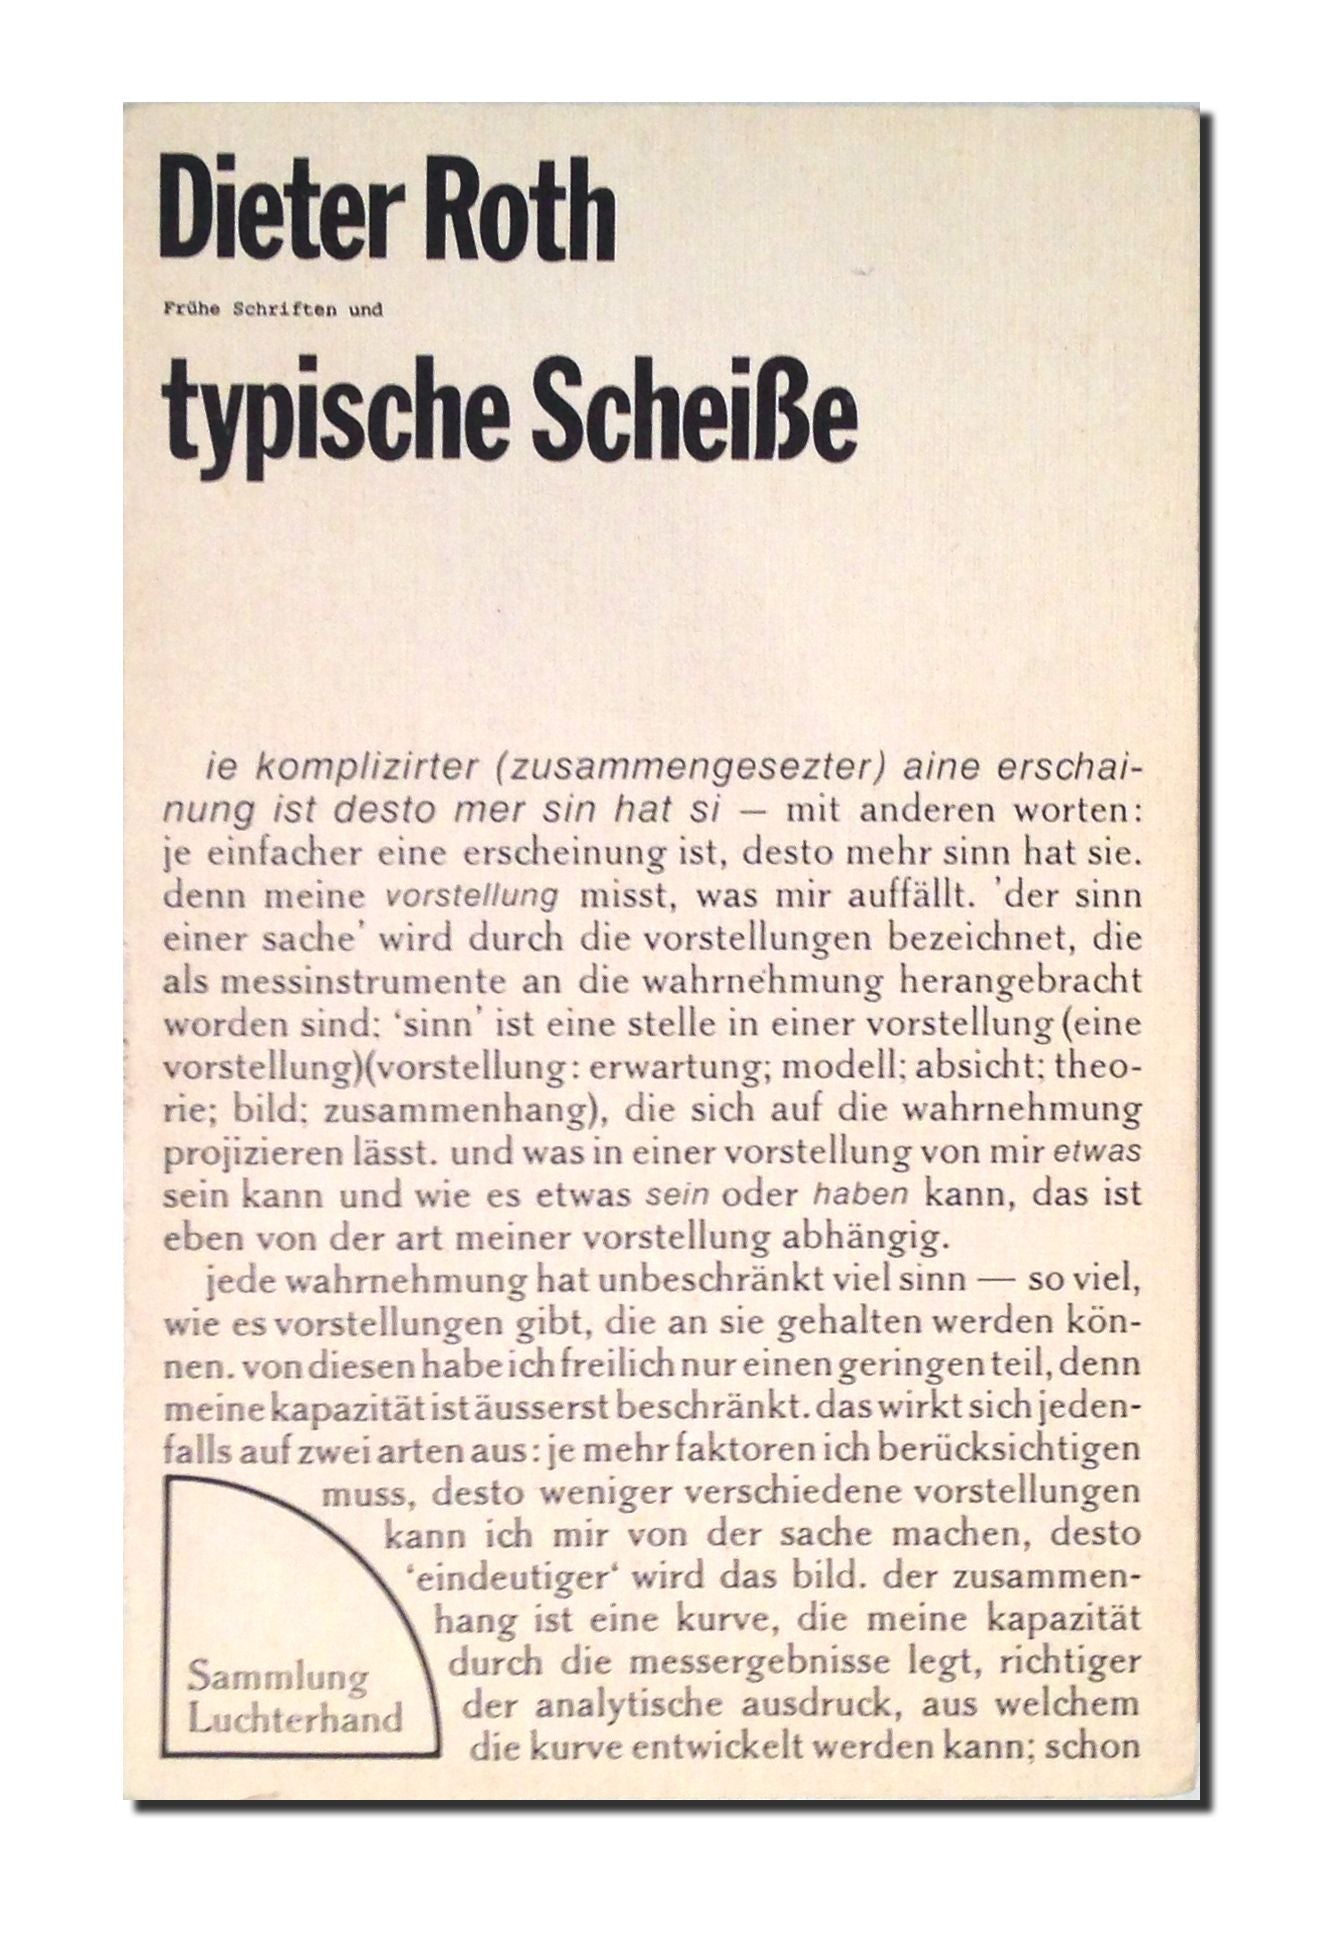 Dieter-Roth-Fruhe-Schriften-und-typische-Scheisse-1975